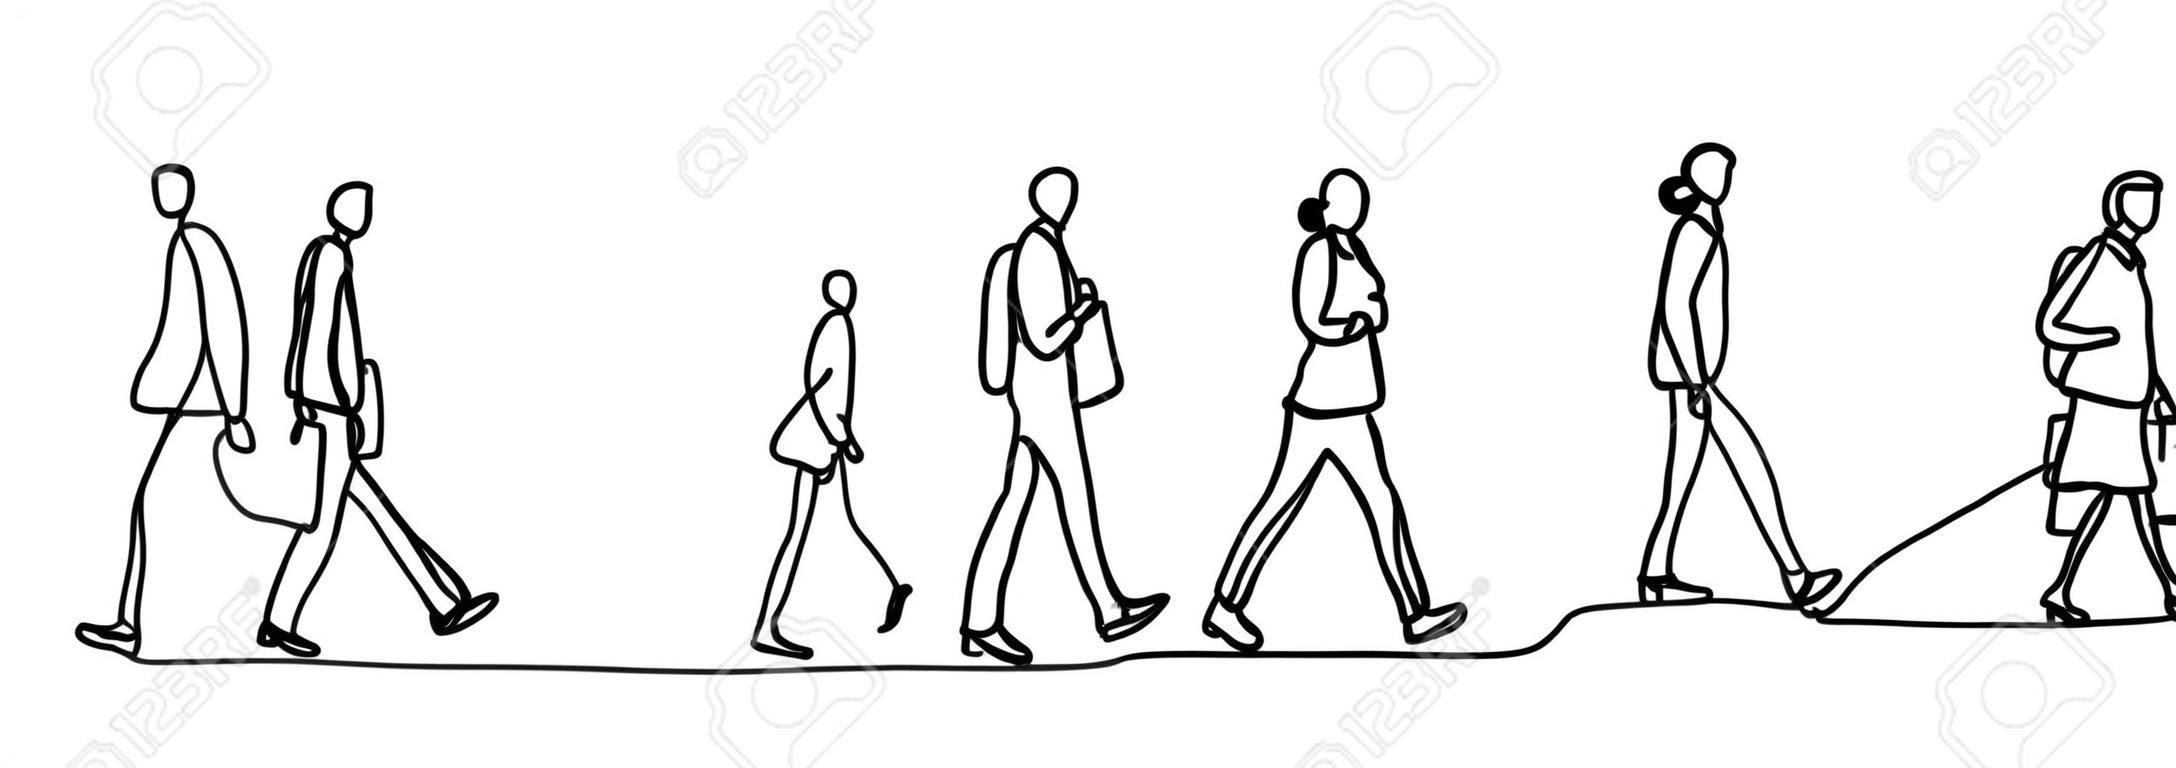 都市通勤者1本の連続線描きミニマリズムデザインスケッチ手描きベクトルイラスト。仕事の前または後に歩く人々。